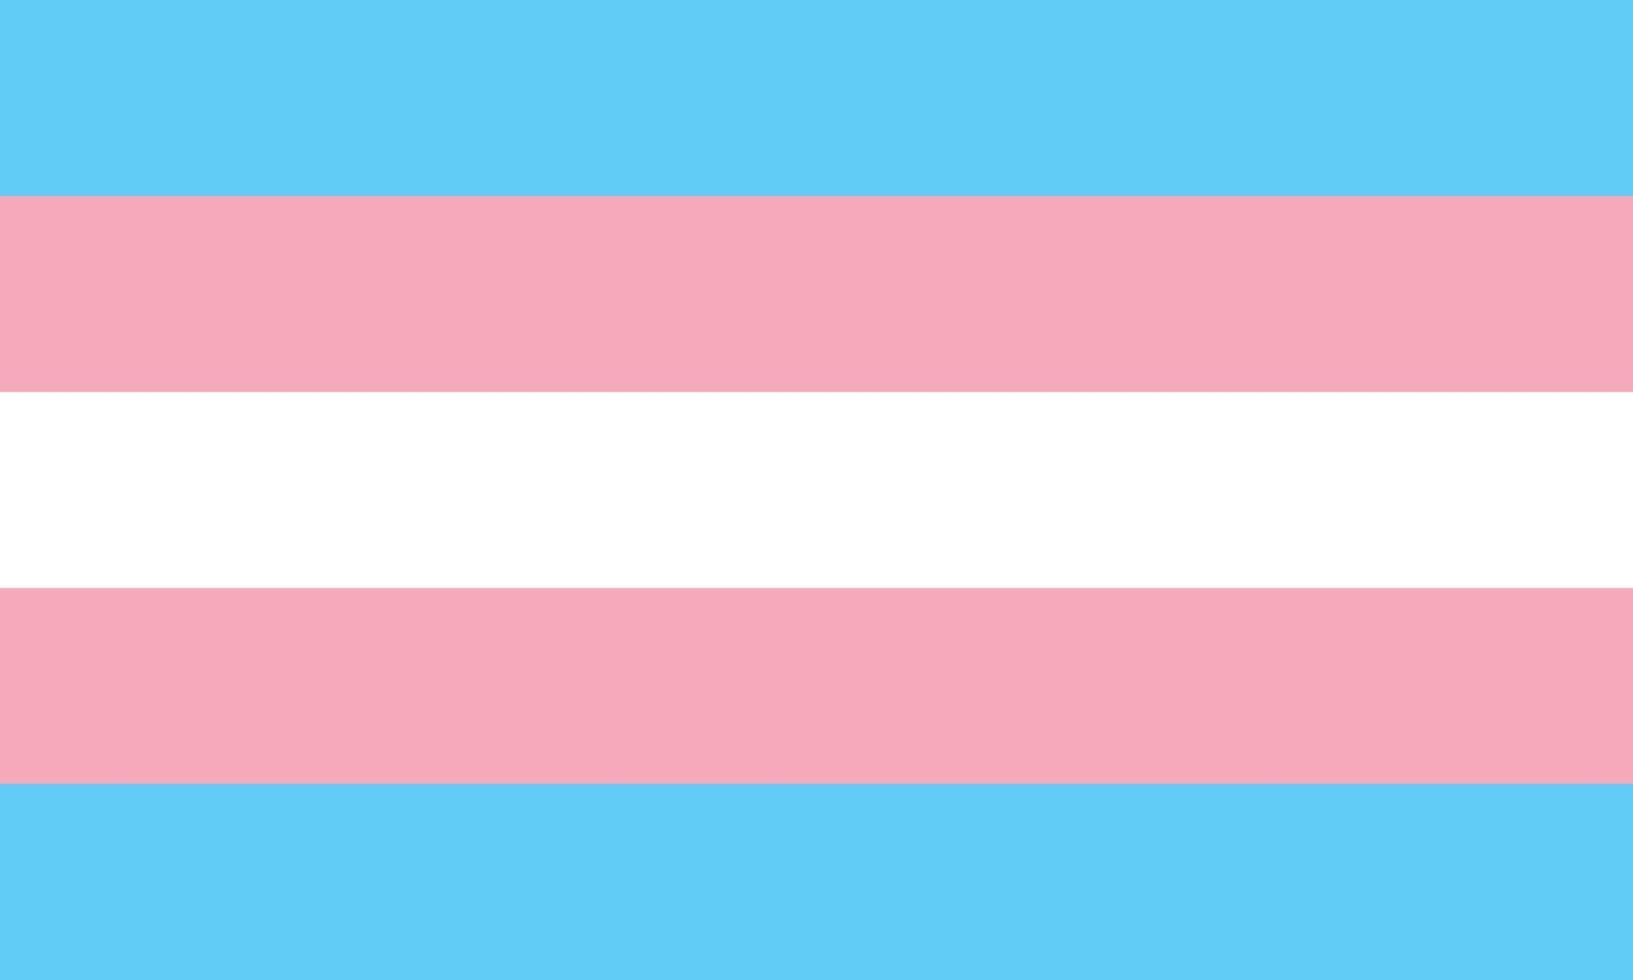 la bandiera dell'orgoglio transgender - bandiera dell'orgoglio a strisce pentacolori azzurre, rosa e bianche, simbolo della comunità transgender. parte dei simboli della serie lgbt vettore